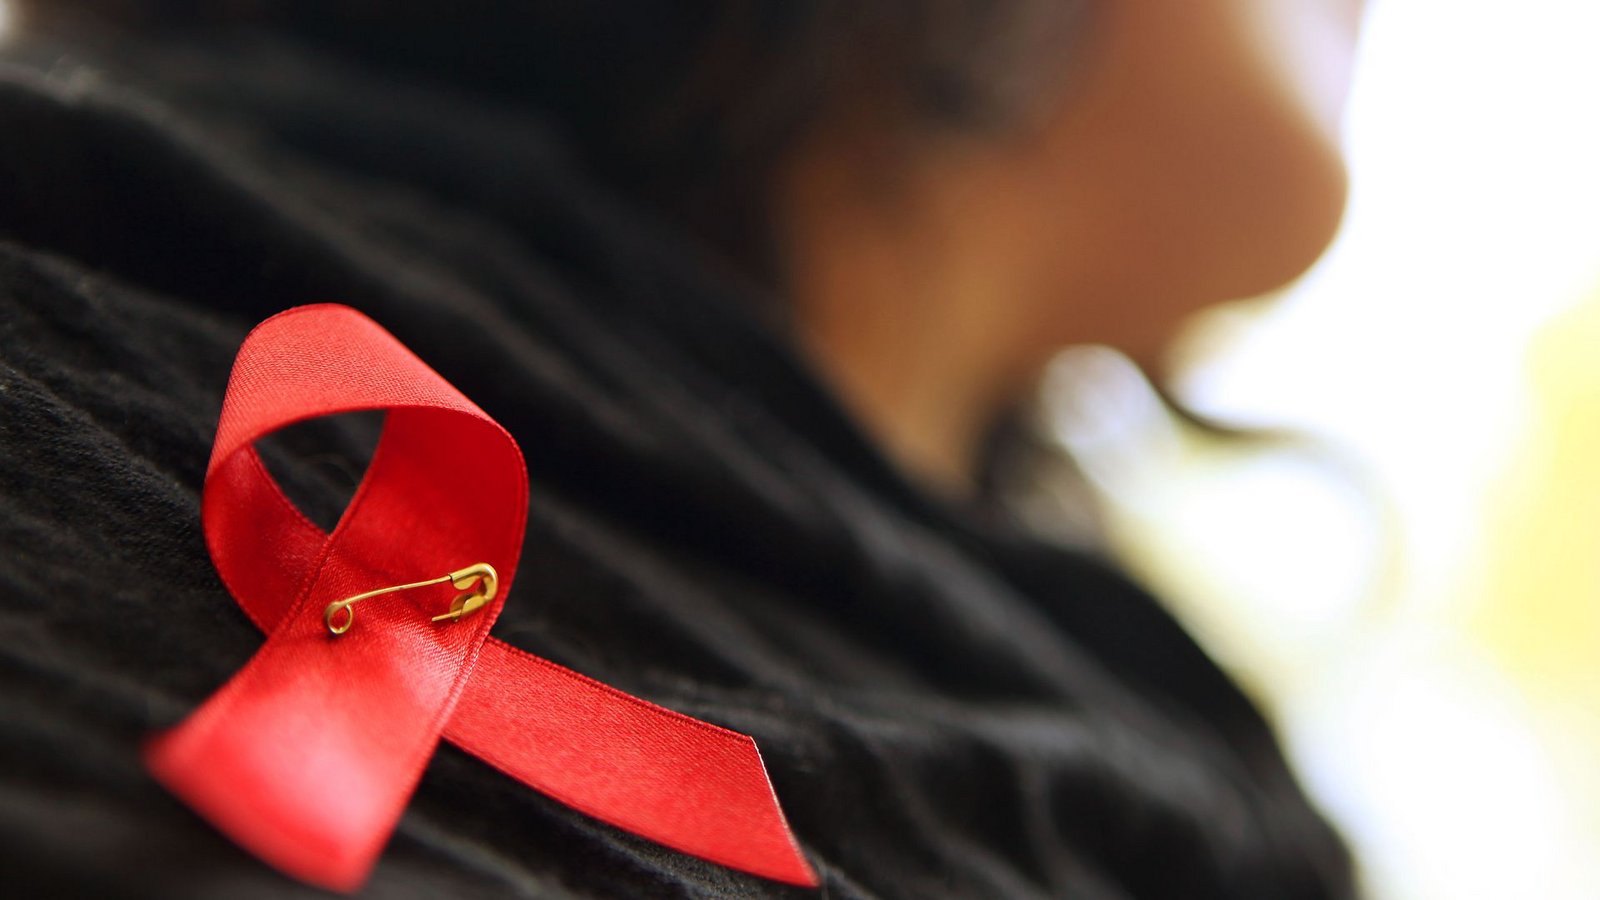 Die rote Schleife ist ein Symbol der Solidarität mit Menschen, die Aids haben oder HIV-infiziert sind.Foto: Oliver Berg/dpa